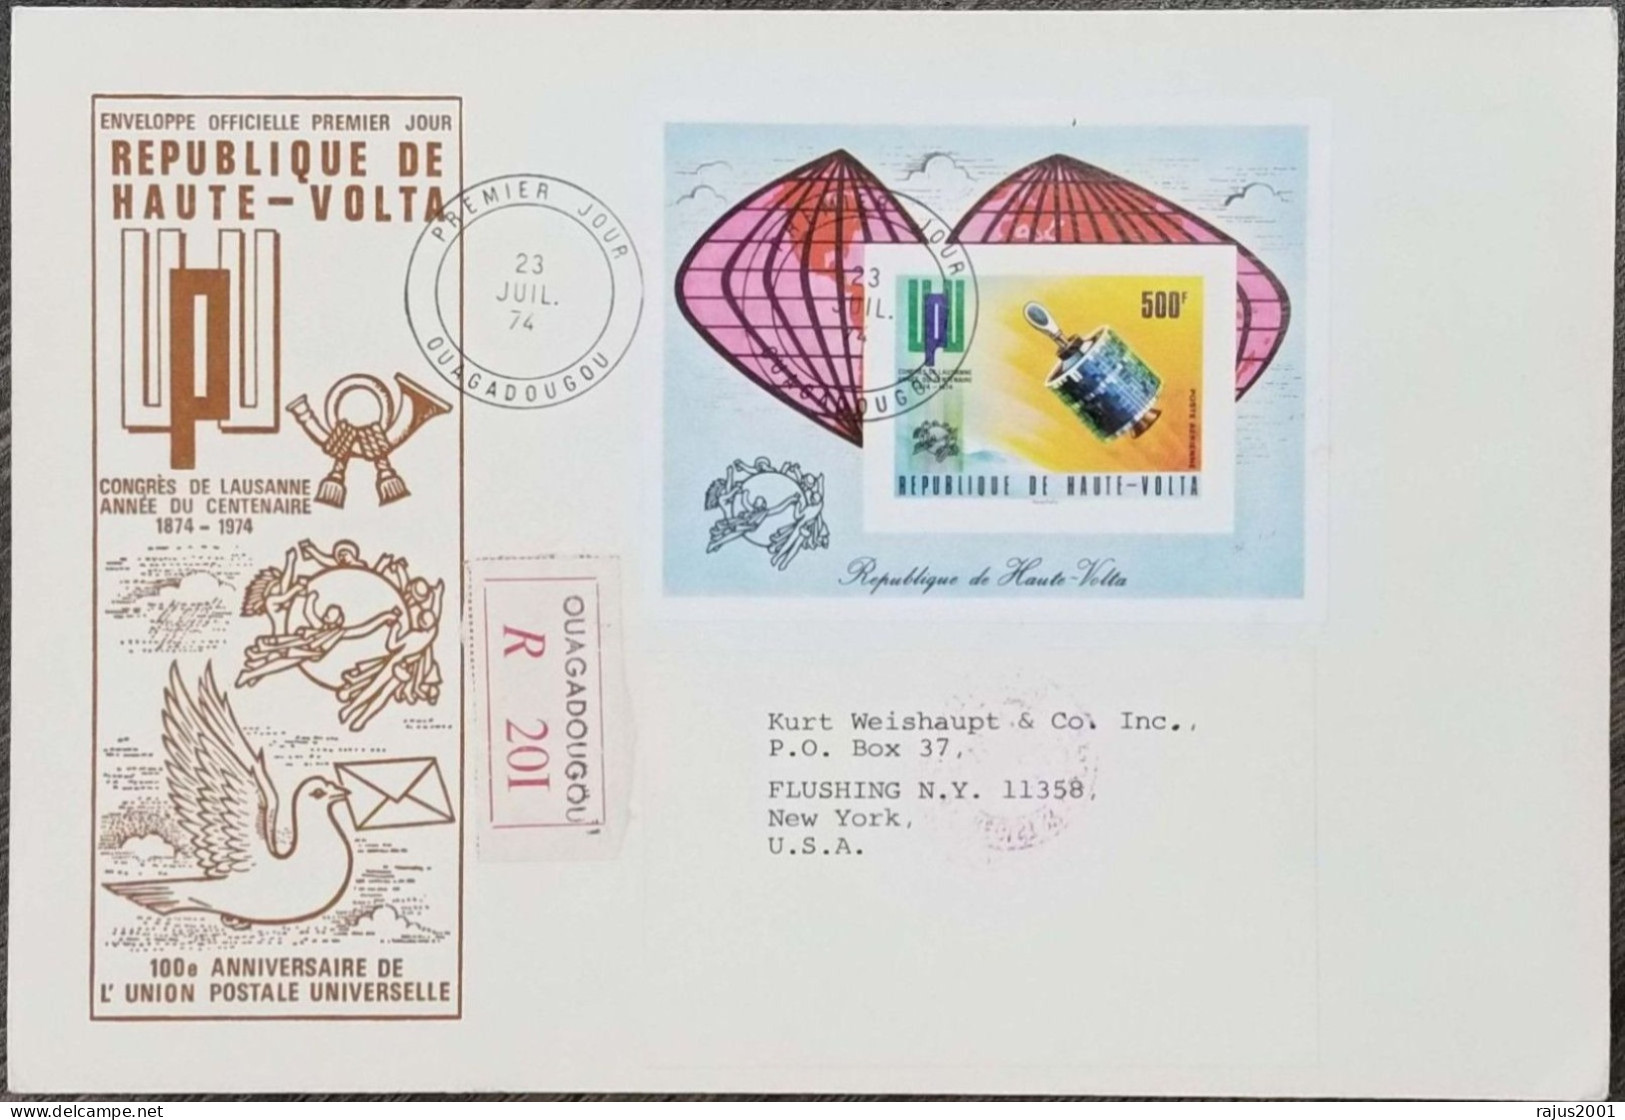 Centenary Of Universal Union Postal, U.P.U, UPU, Satellite, IMPERF MS Circulated Registered Cover FDC 1974 Upper Volta - UPU (Wereldpostunie)